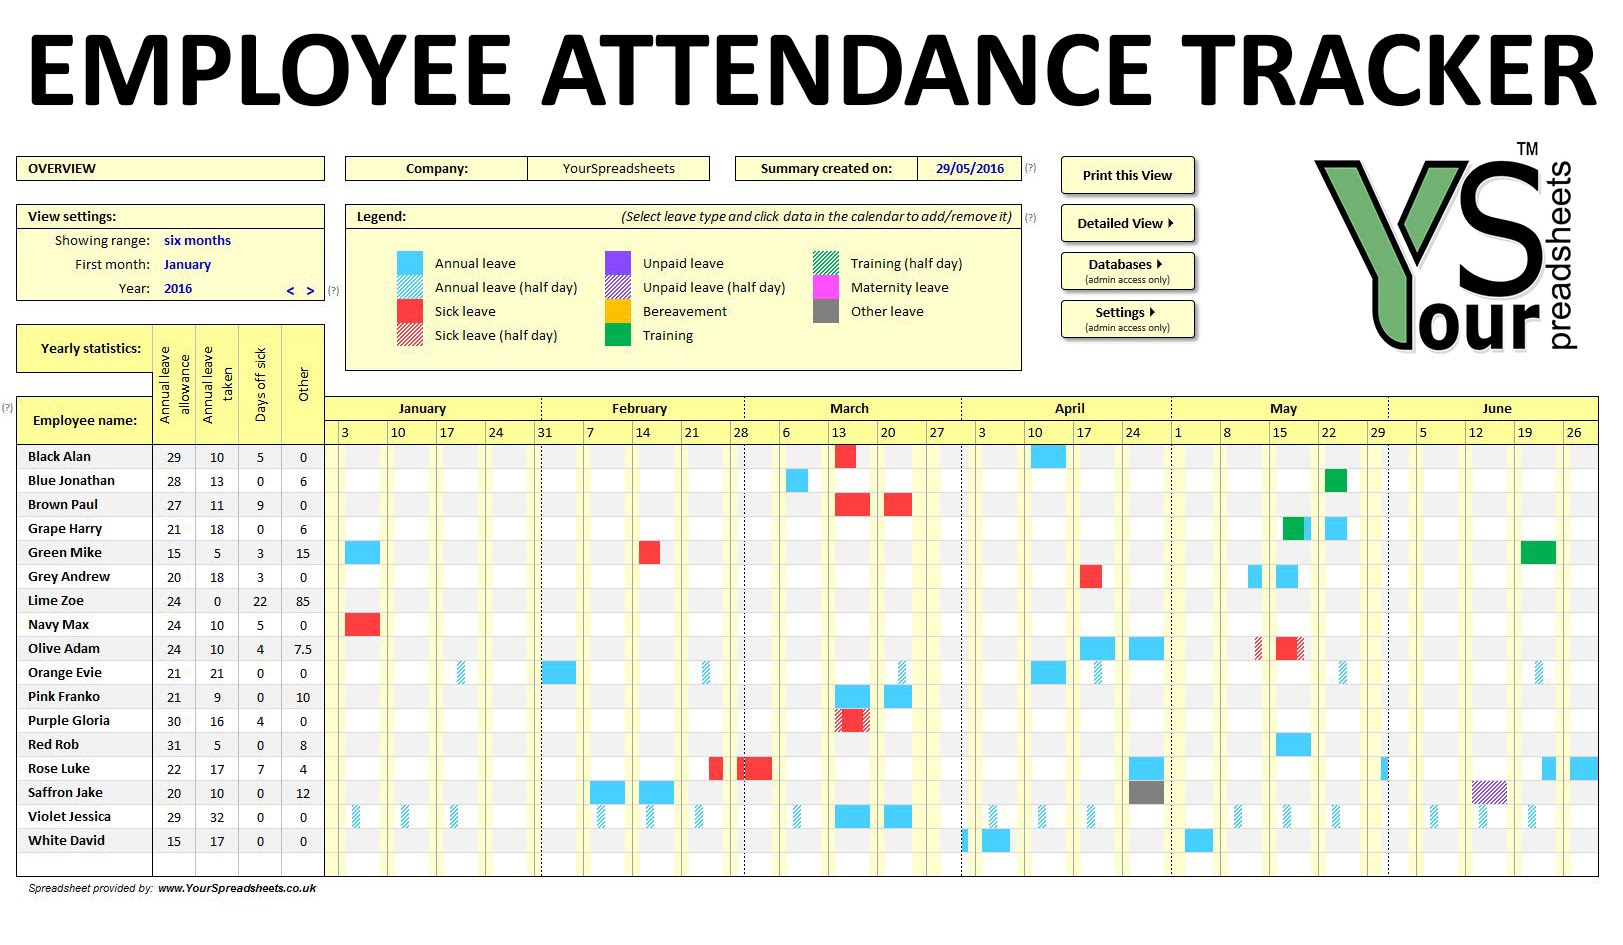 Employee Attendance Tracker spreadsheet   YouTube